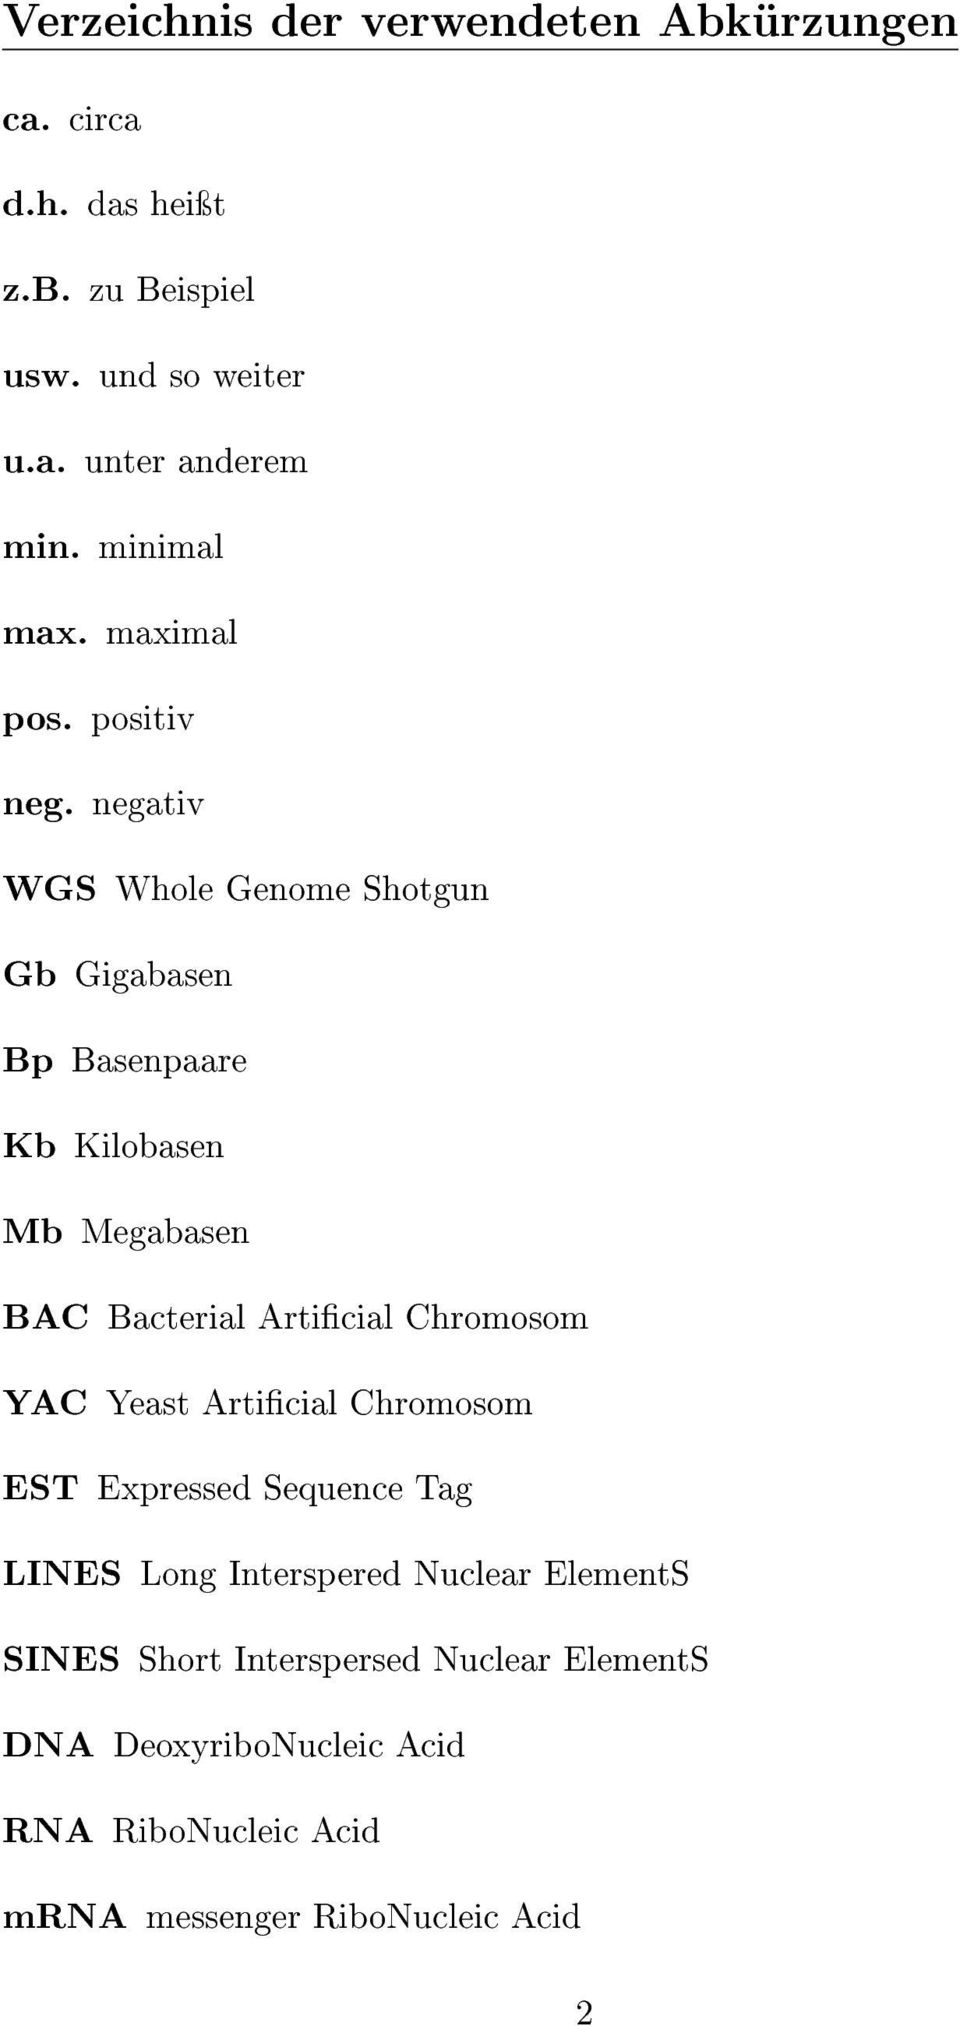 negativ WGS Whole Genome Shotgun Gb Gigabasen Bp Basenpaare Kb Kilobasen Mb Megabasen BAC Bacterial Articial Chromosom YAC